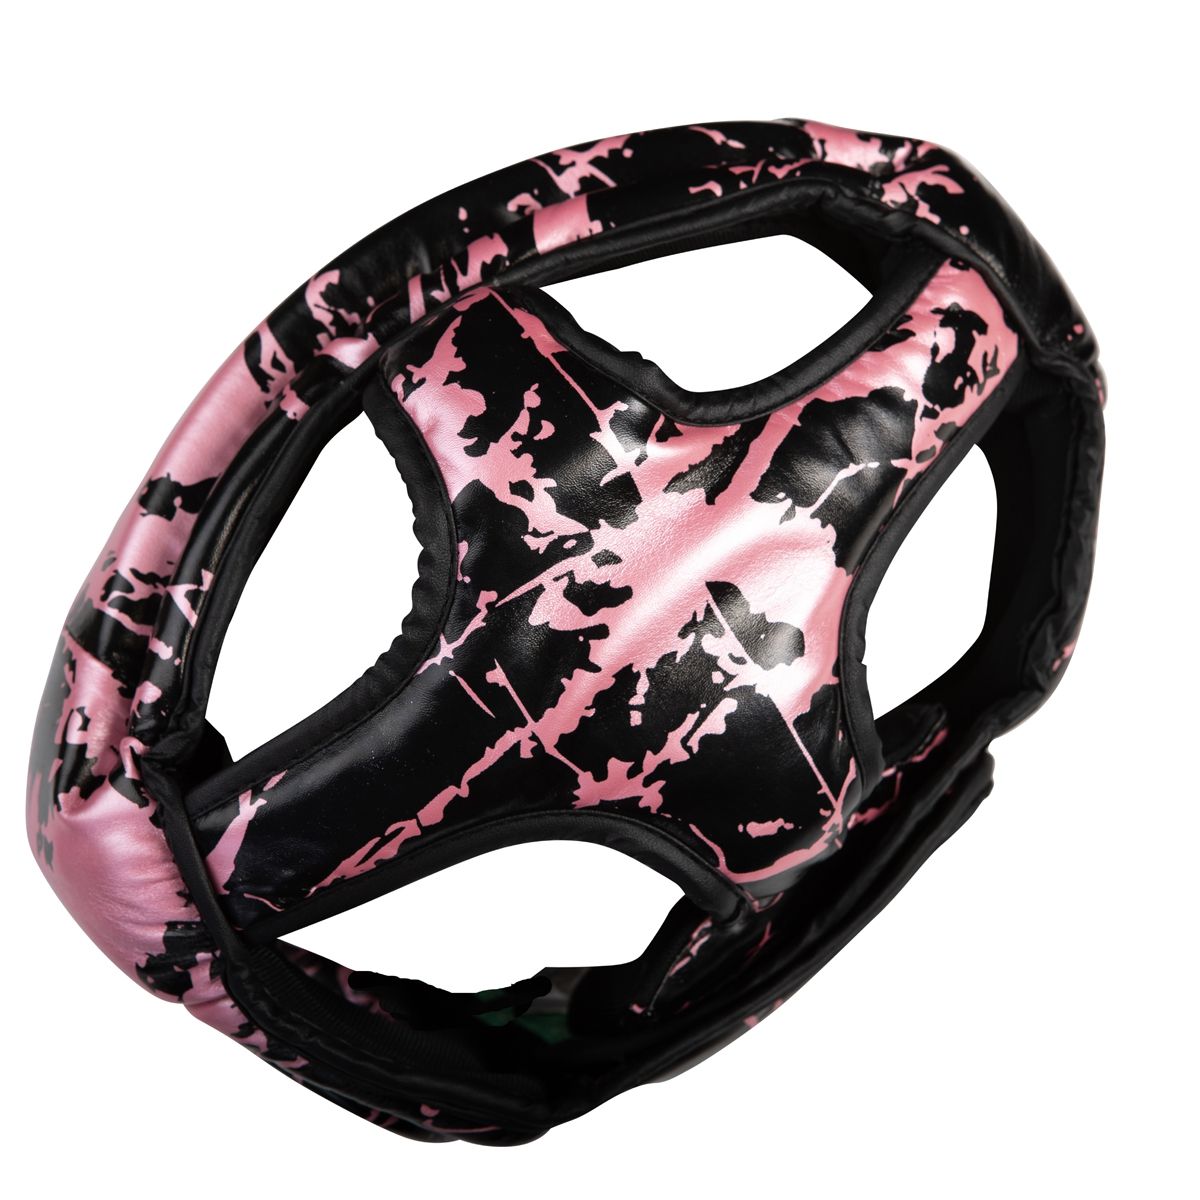 Booster hoofdbeschermer jeugd roze - Booster Fight Store